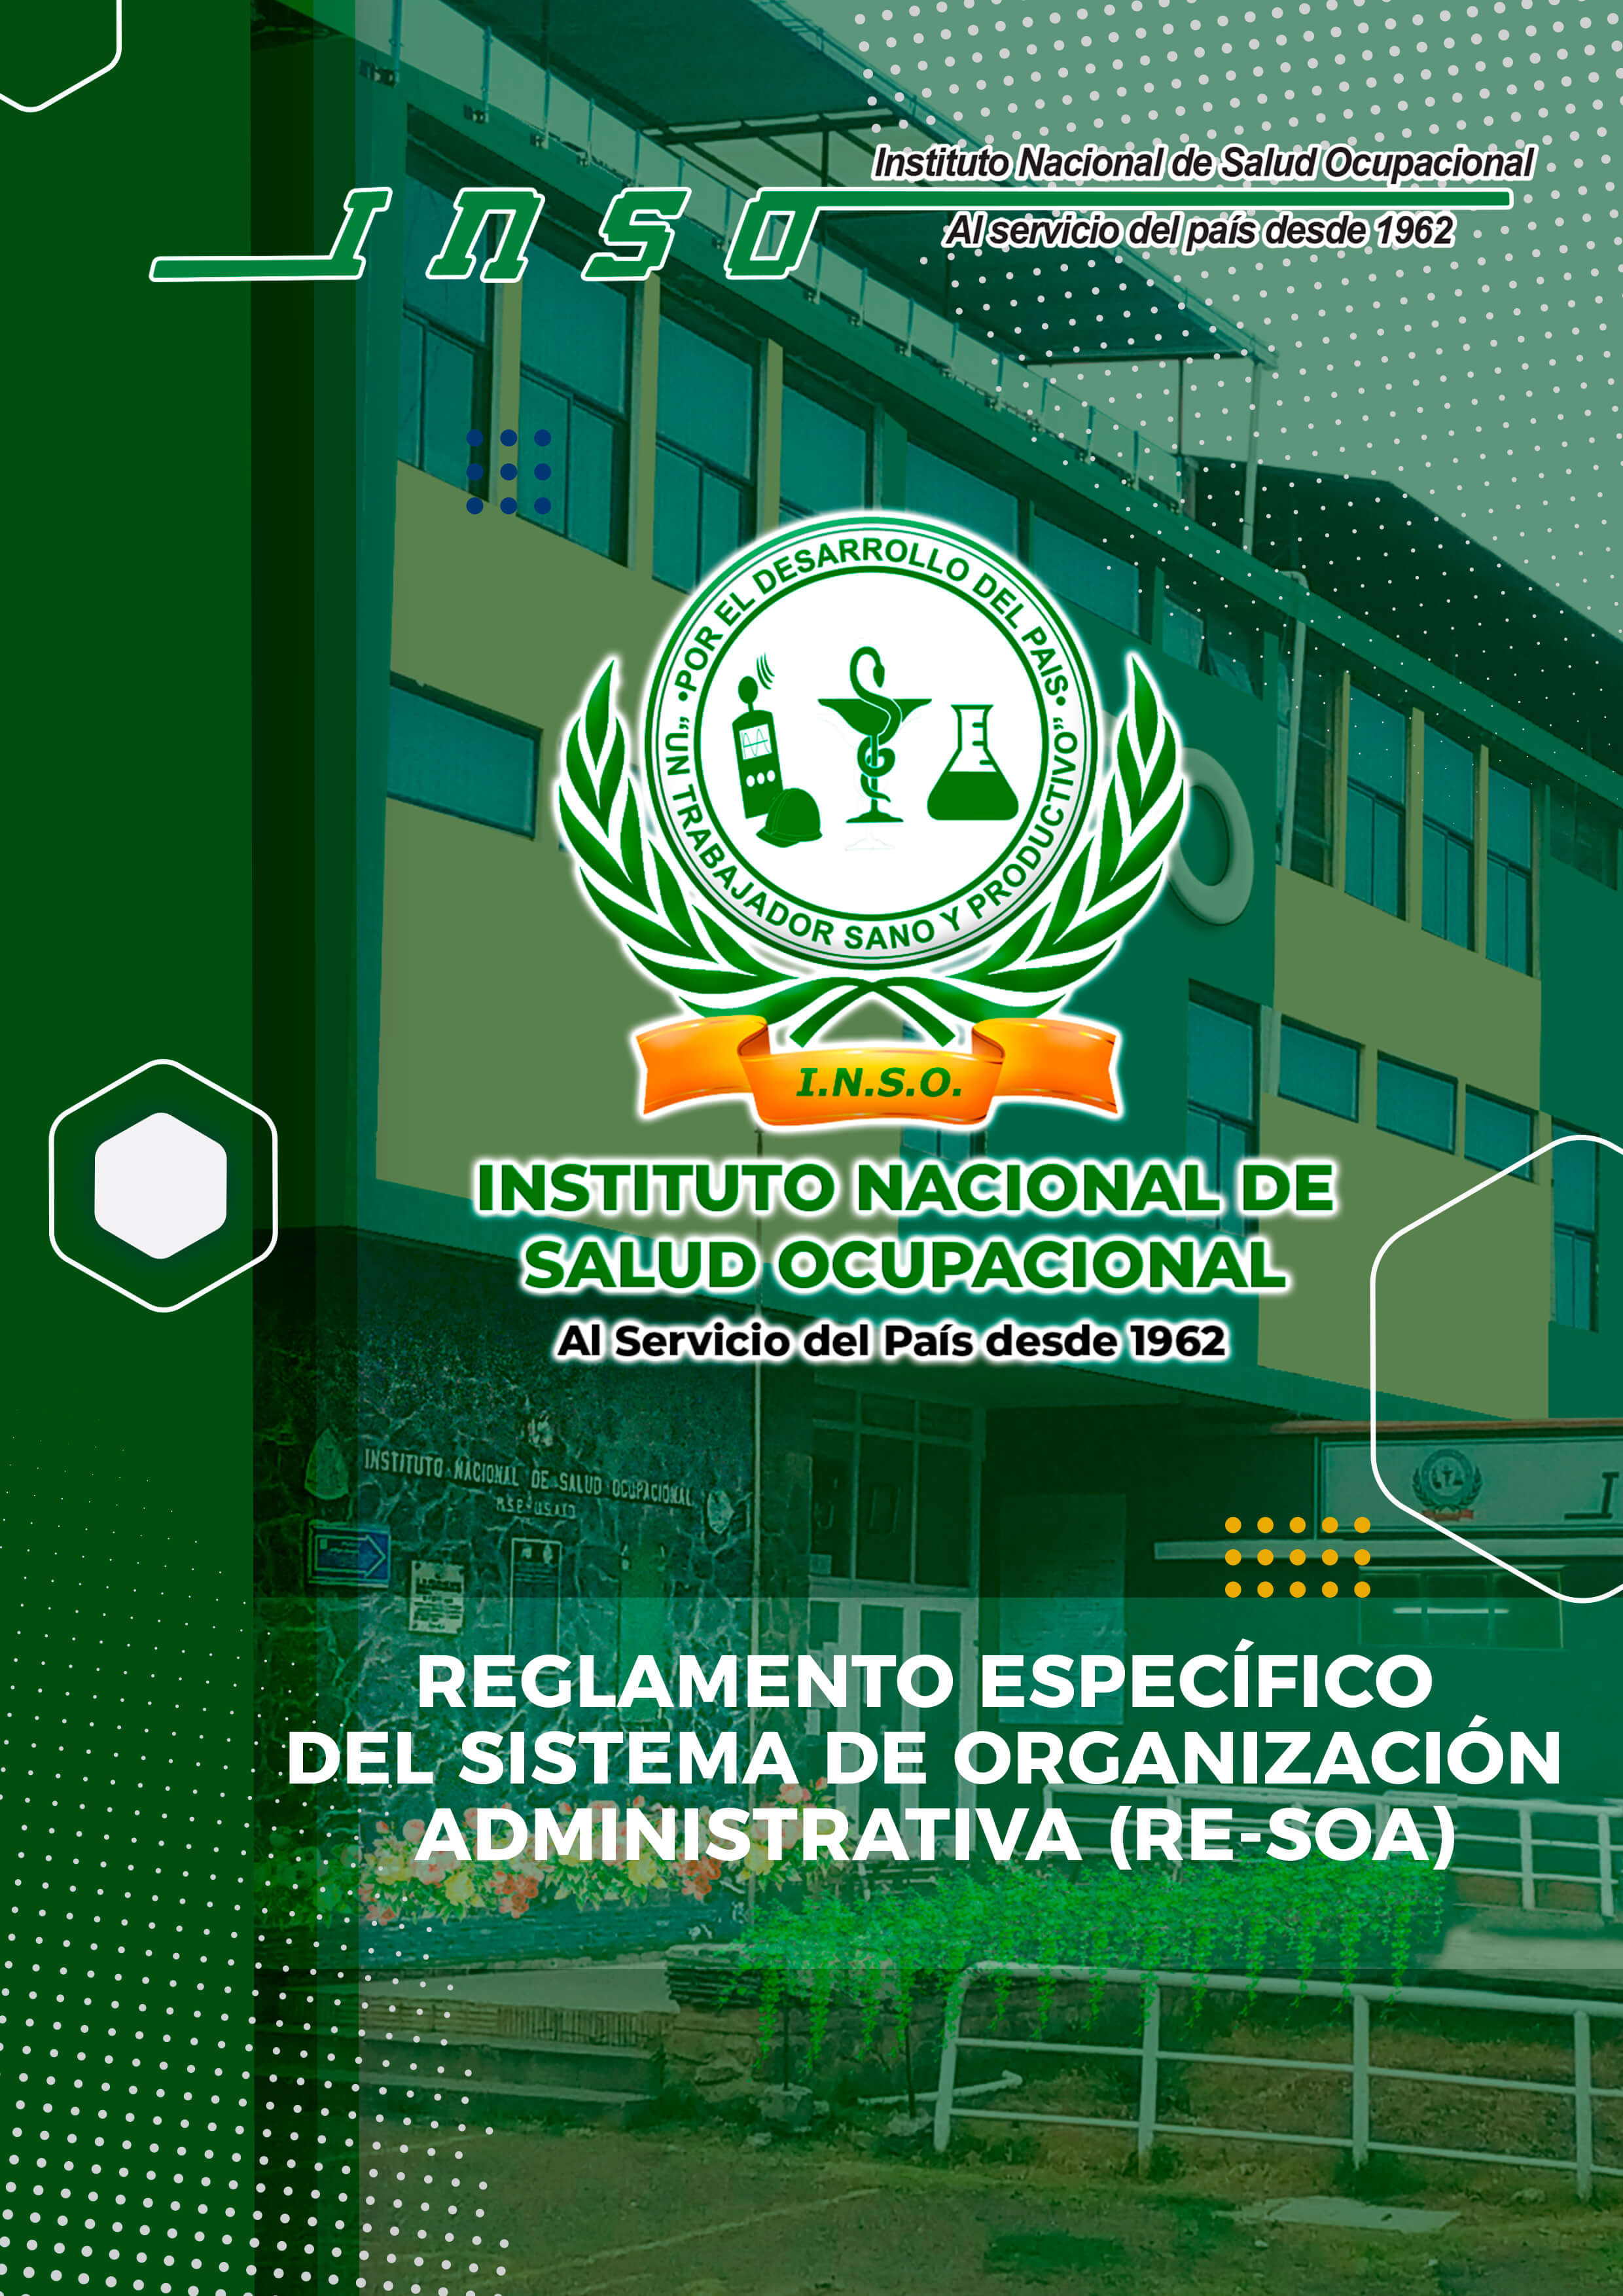 REGLAMENTO ESPECIFICO DEL SISTEMA DE ORGANIZACION ADMINISTRATIVA (RE-SOA)